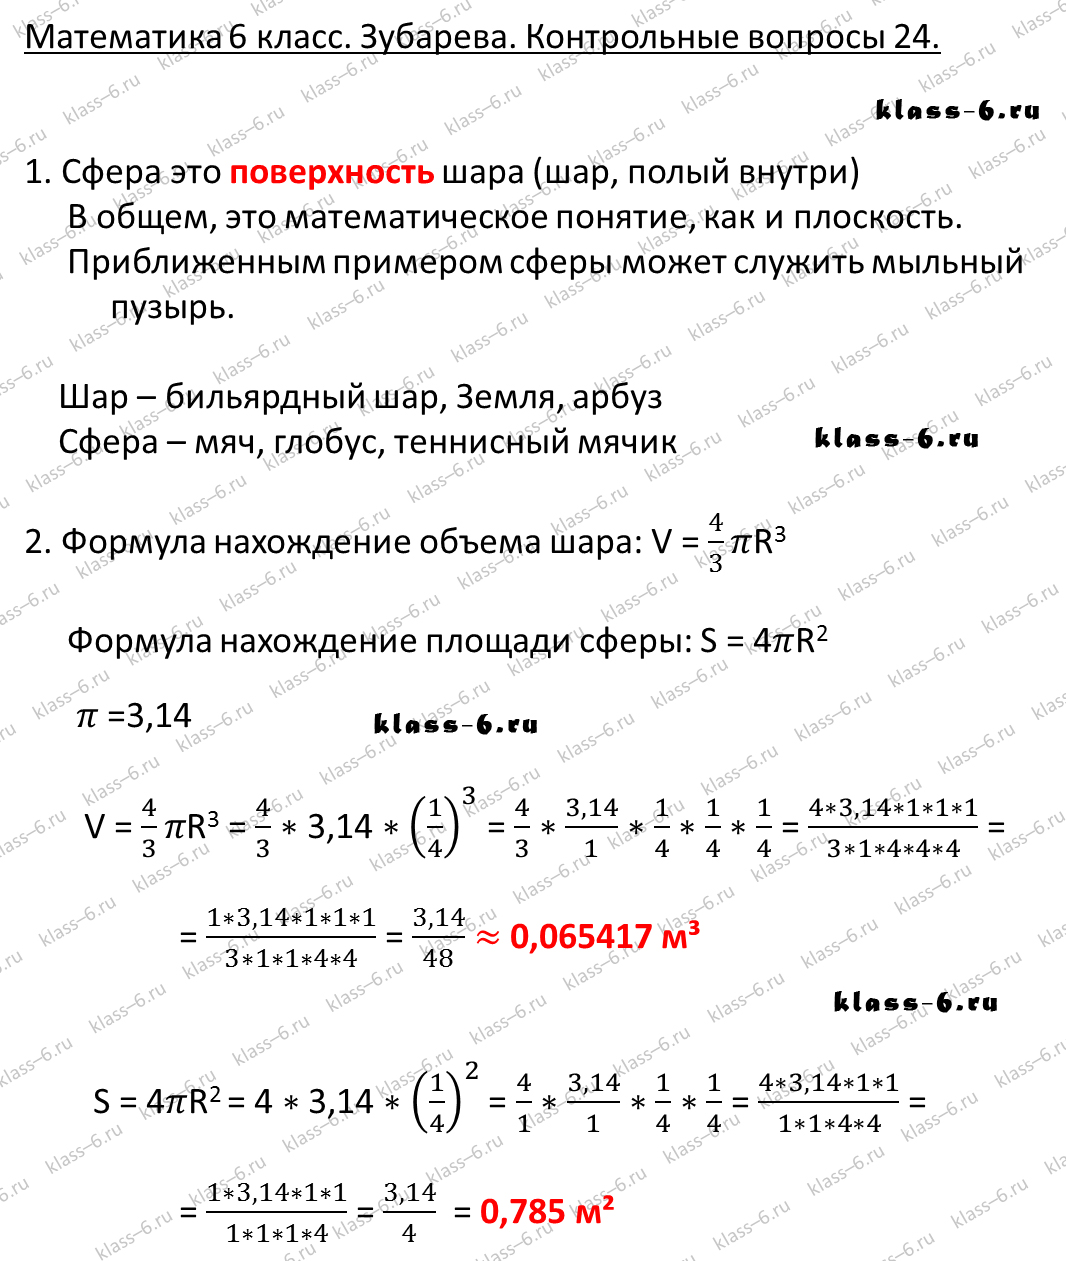 гдз математика Зубарева 6 класс ответ и подробное решение с объяснениями контрольных вопросов к параграфу № 24